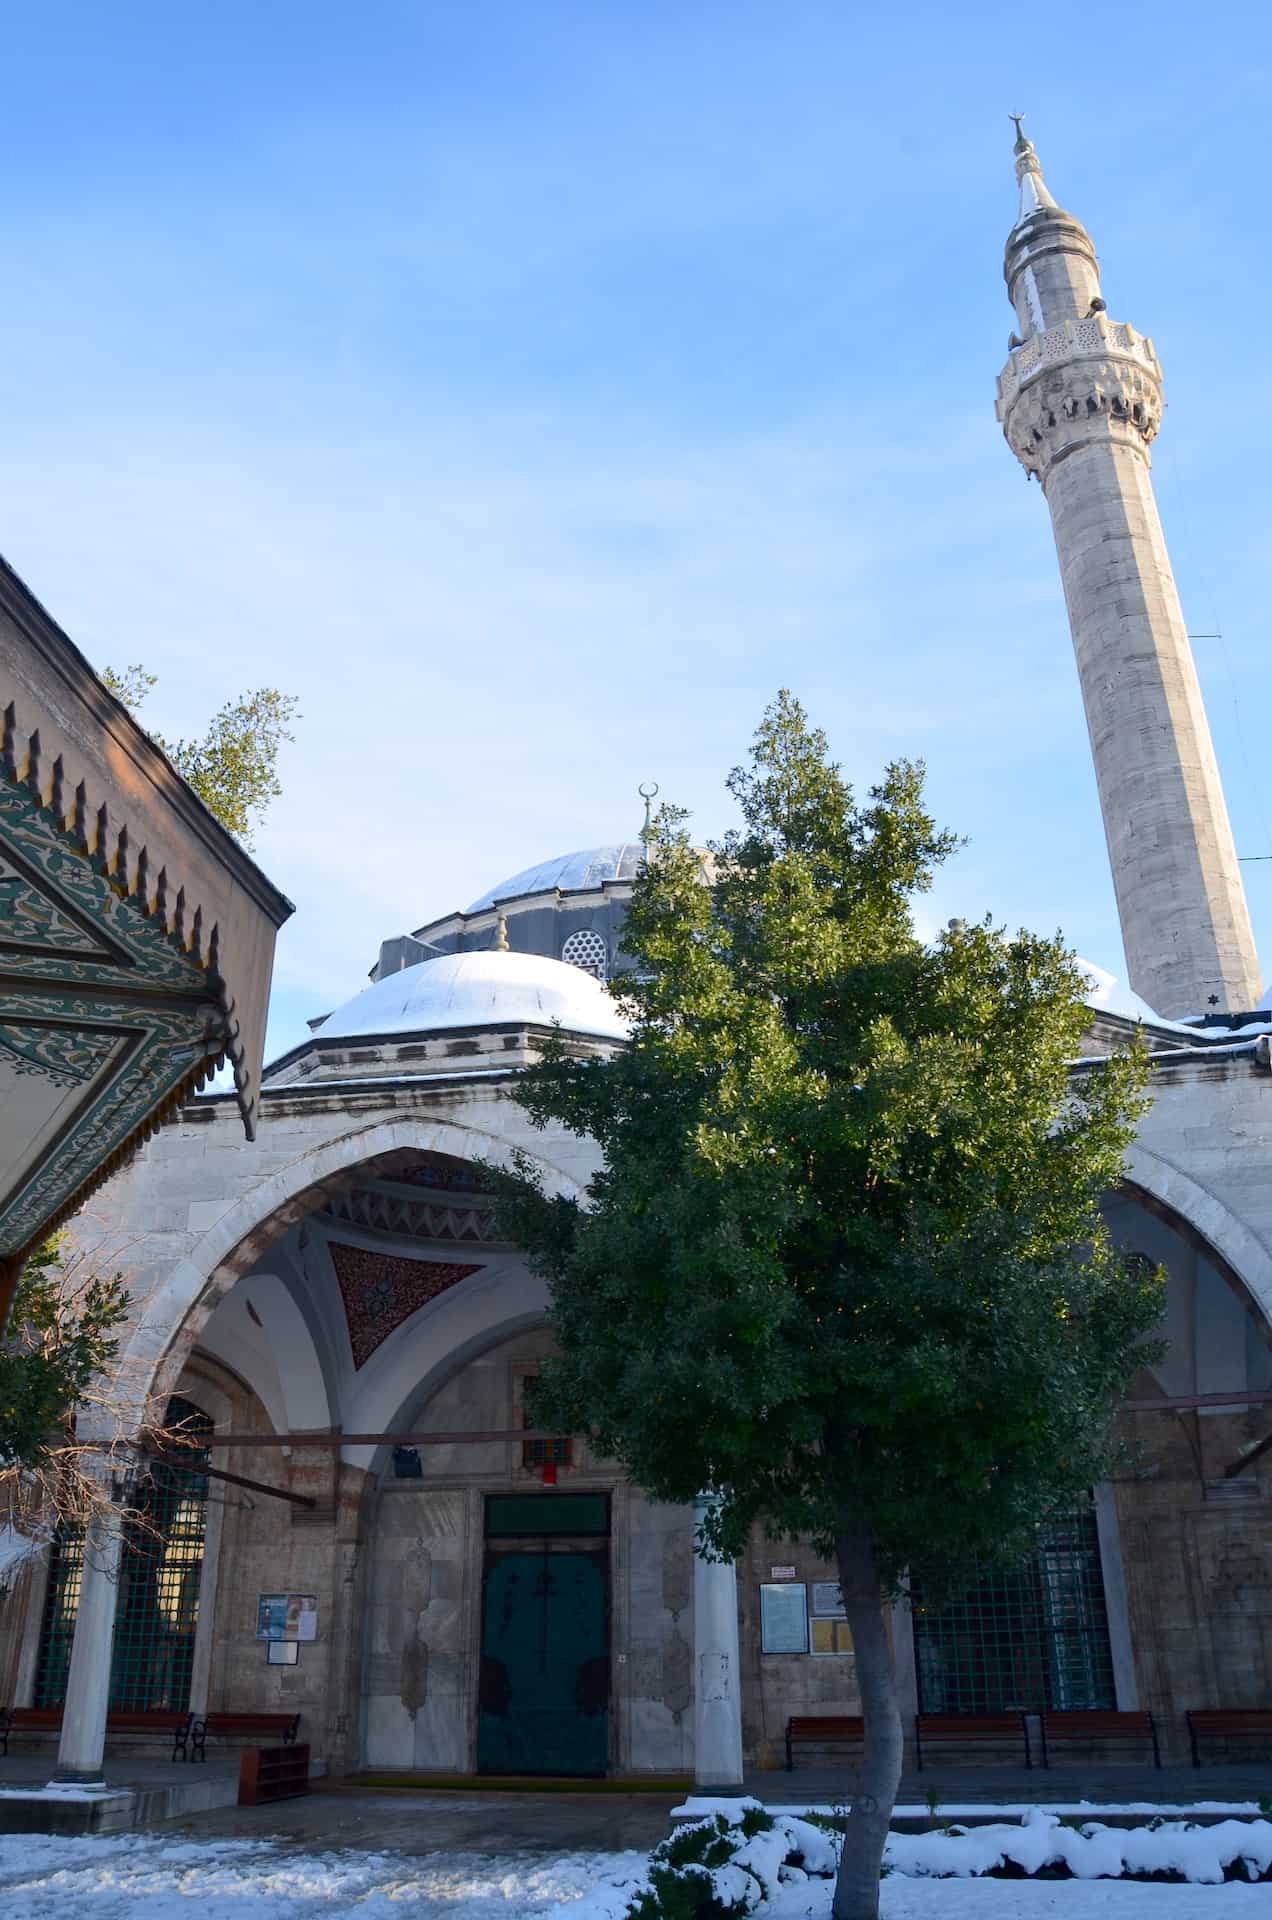 Kara Ahmed Pasha Mosque